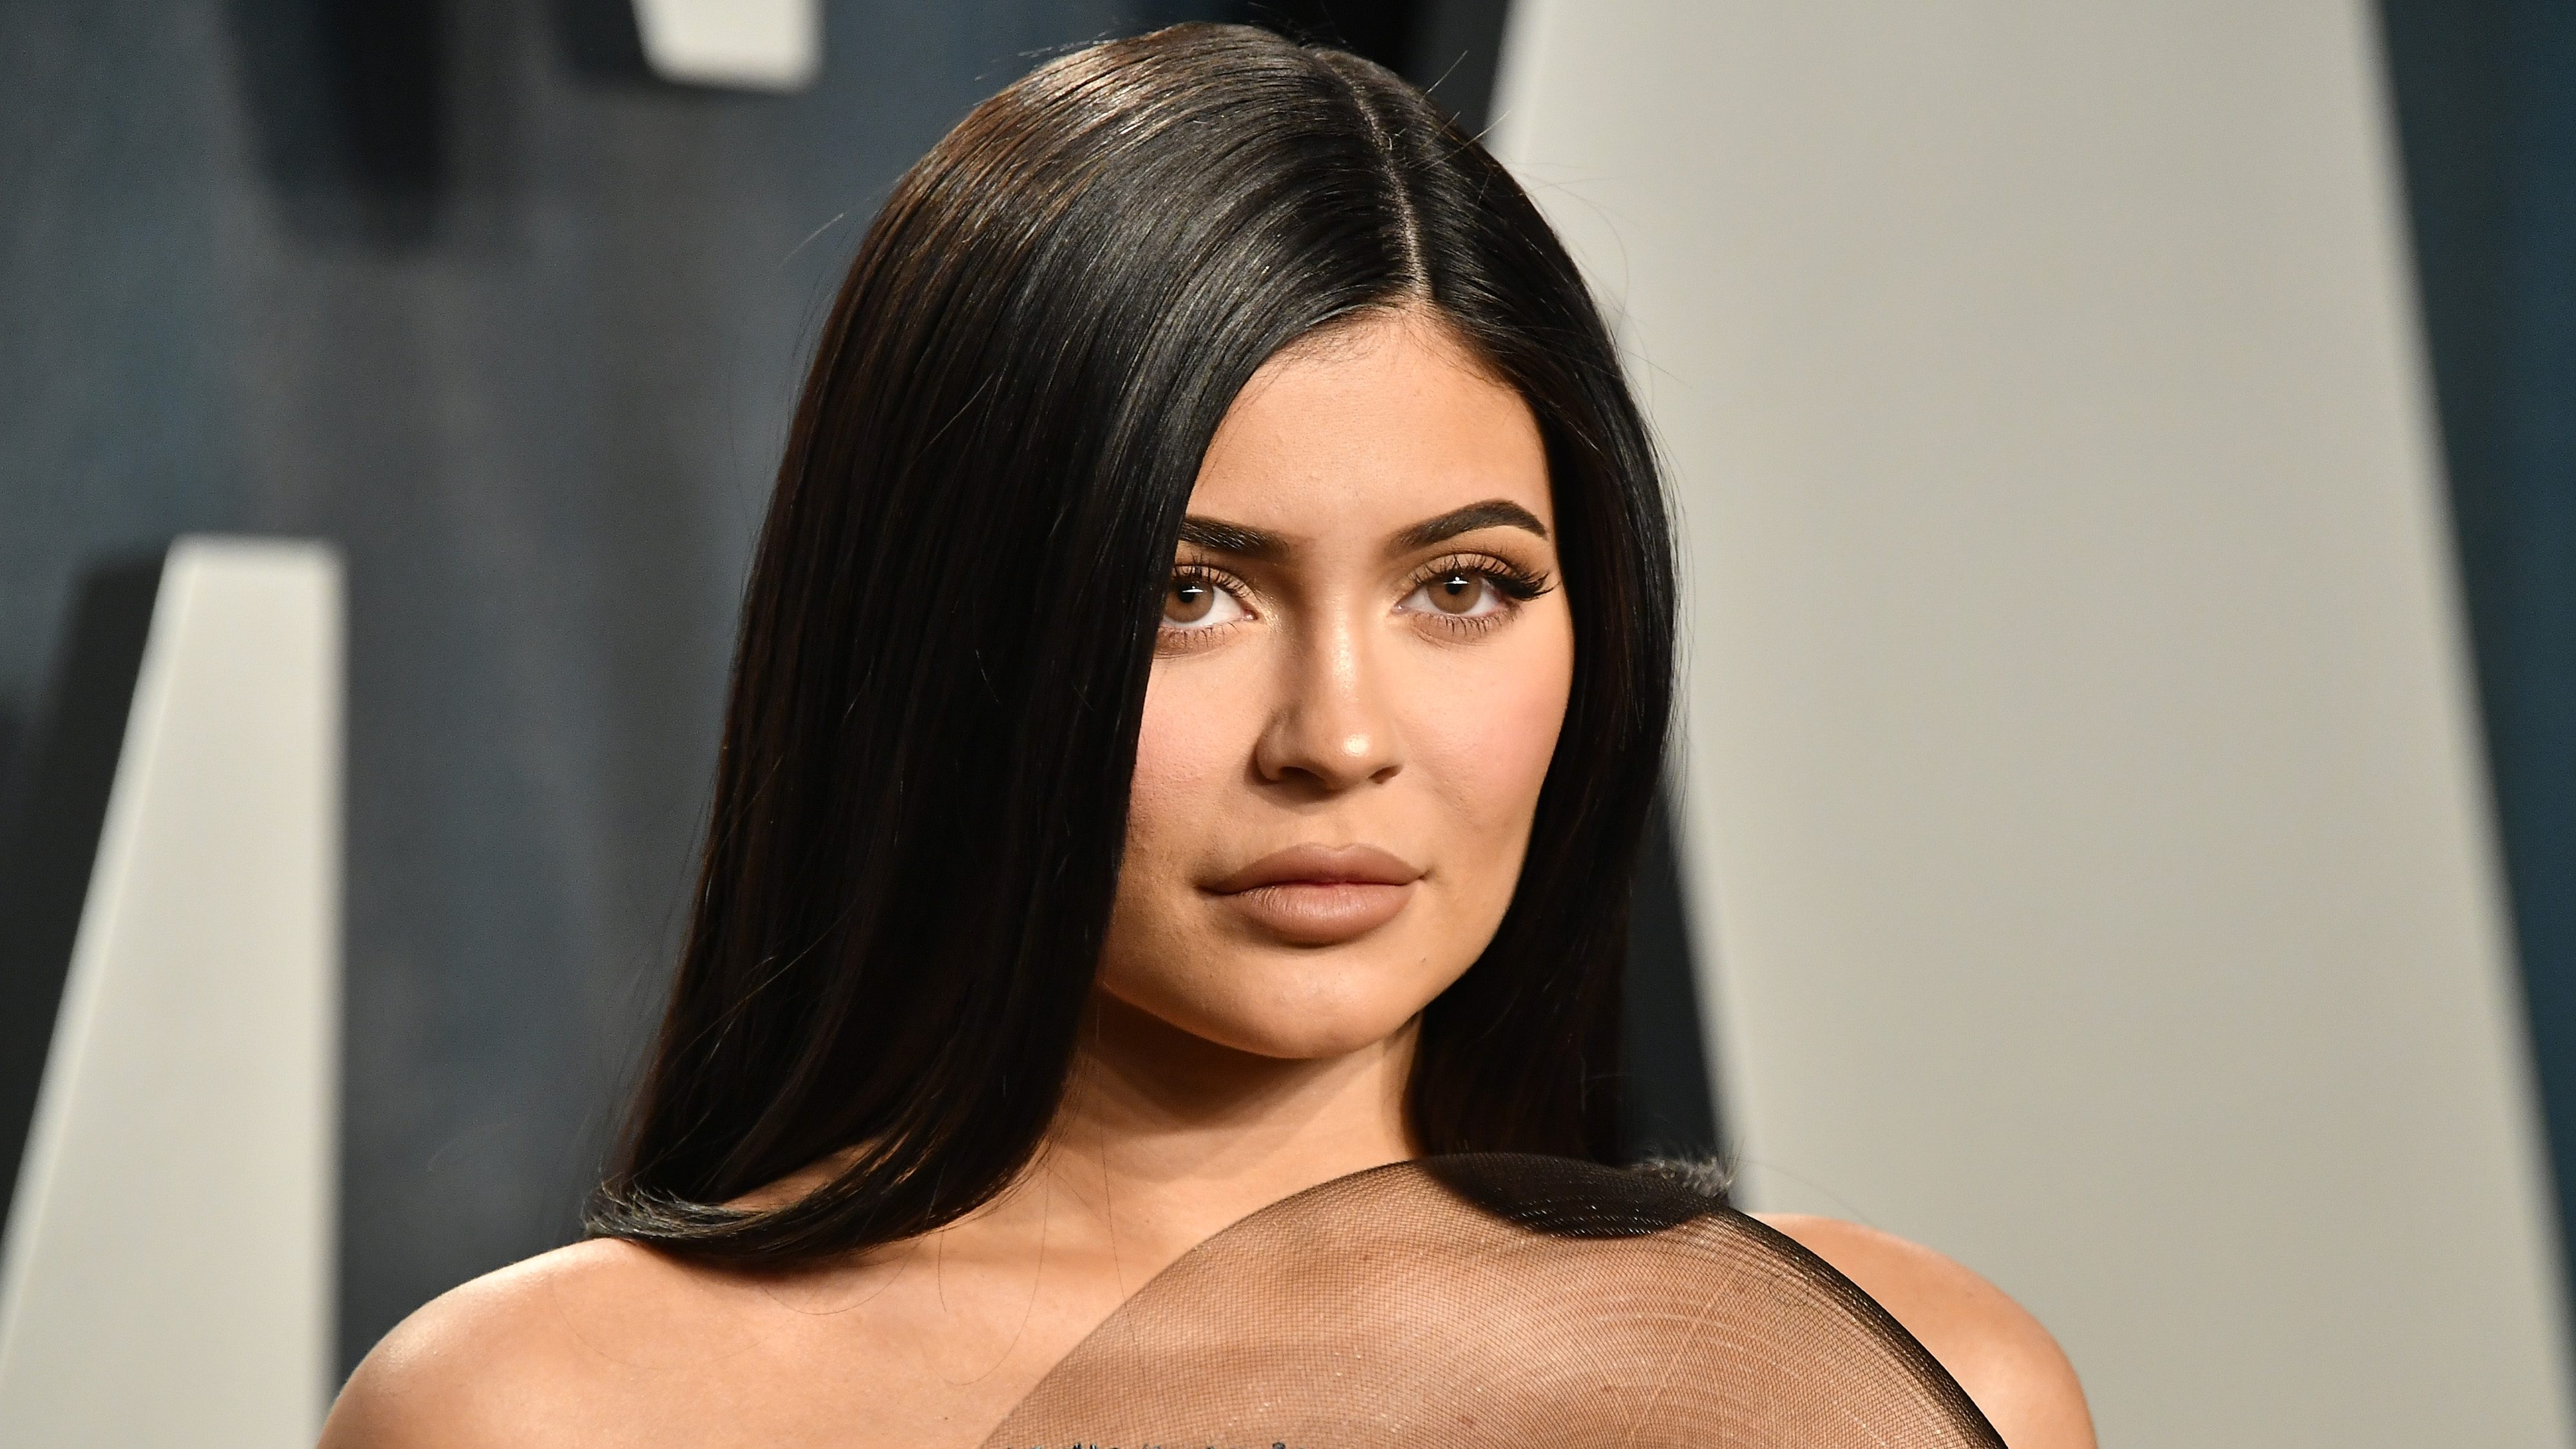 Kylie Jenner kesztyű nélkül, szétengedett hajjal ügyködött kozmetikai cégének laborjában